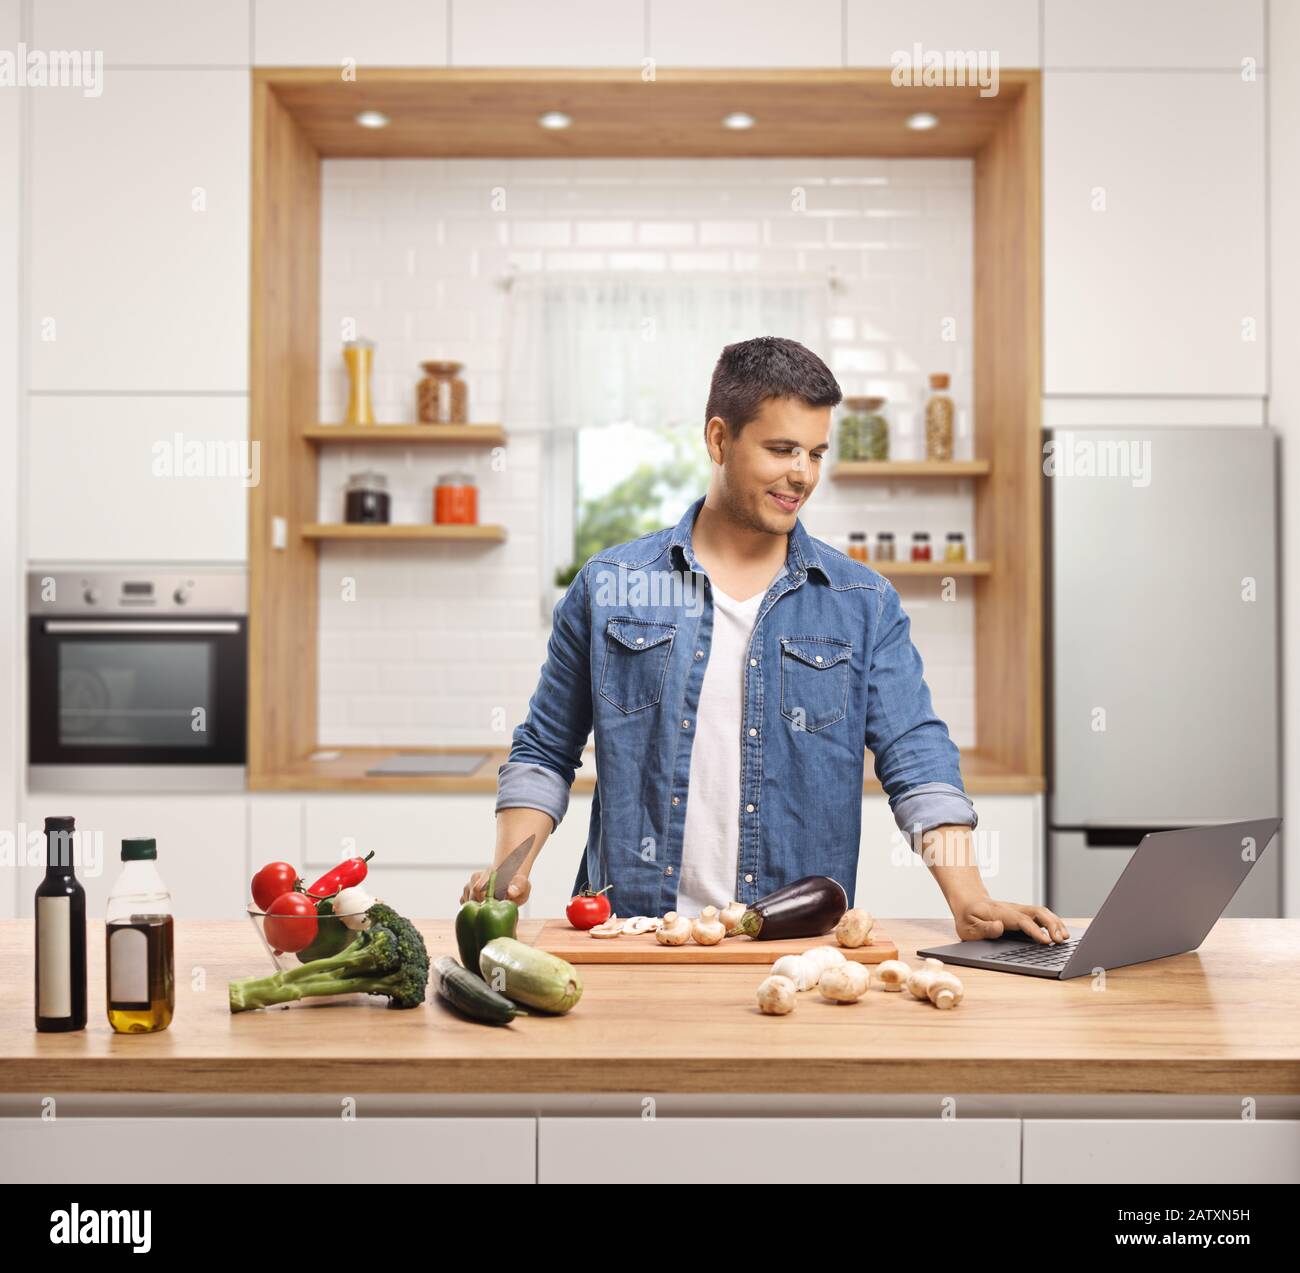 Junger Mann, der in einer Küche mit einem Laptop kocht Stockfoto